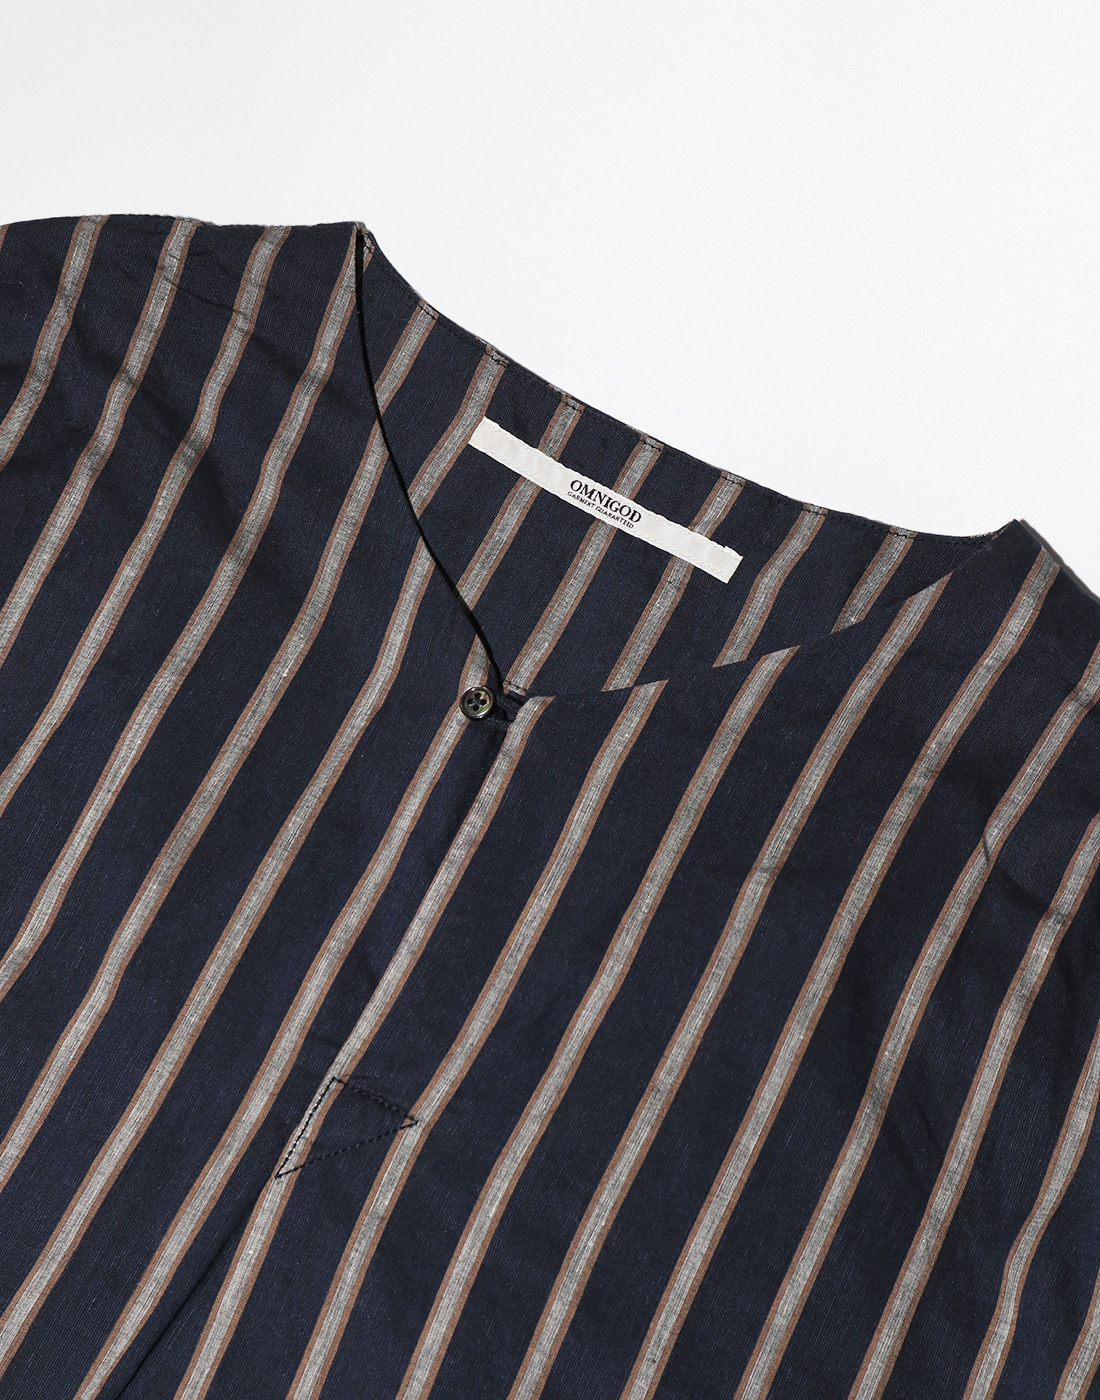 OMNIGOD Stripe Half Shirt, Navy